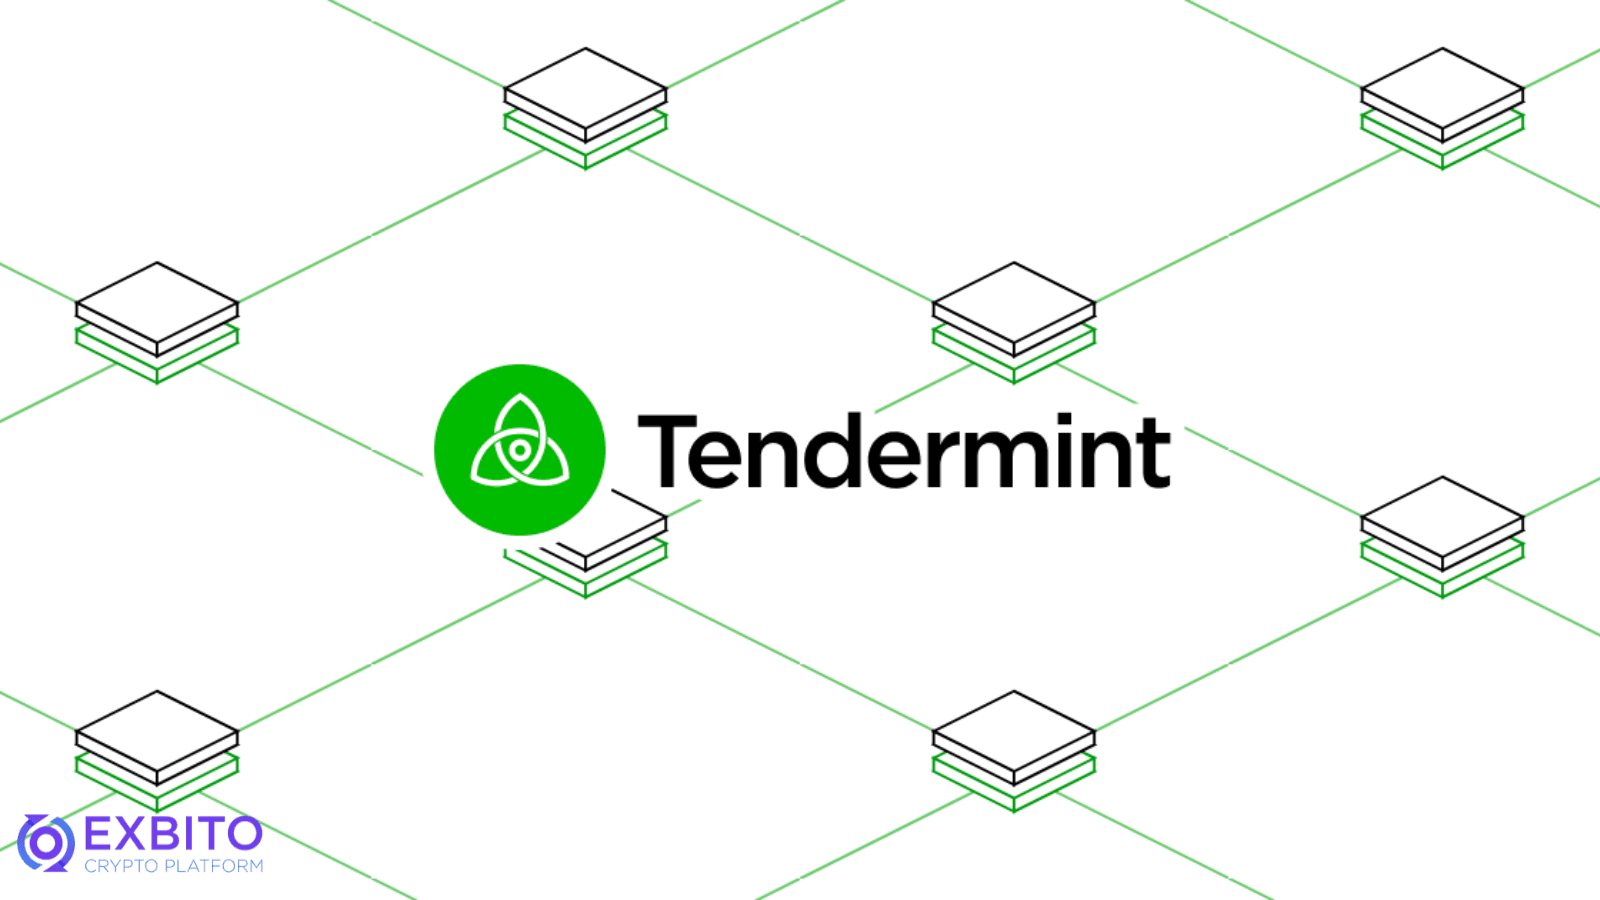 هسته تندرمینت (Tendermint Core)